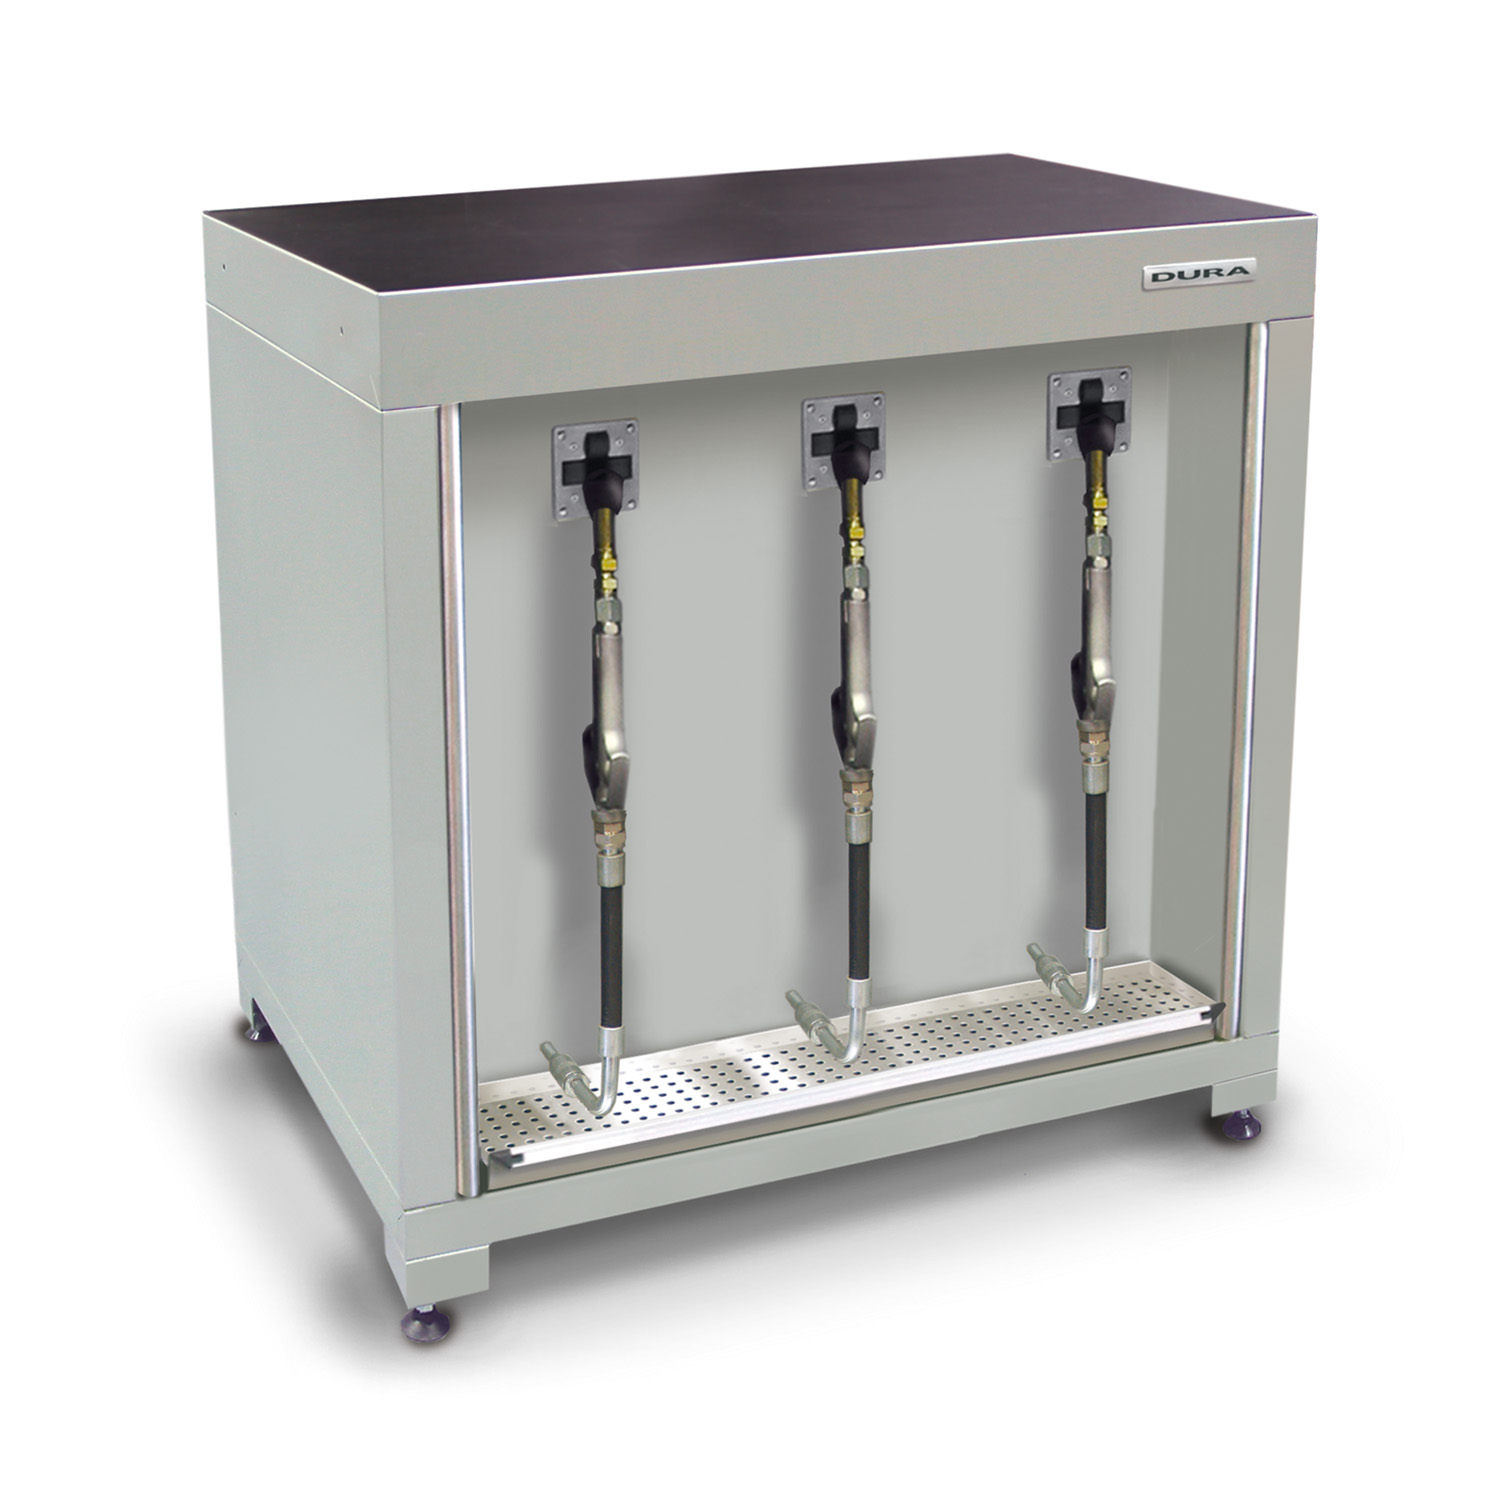 900mm Low-level fluid management cabinet (750mm depth)